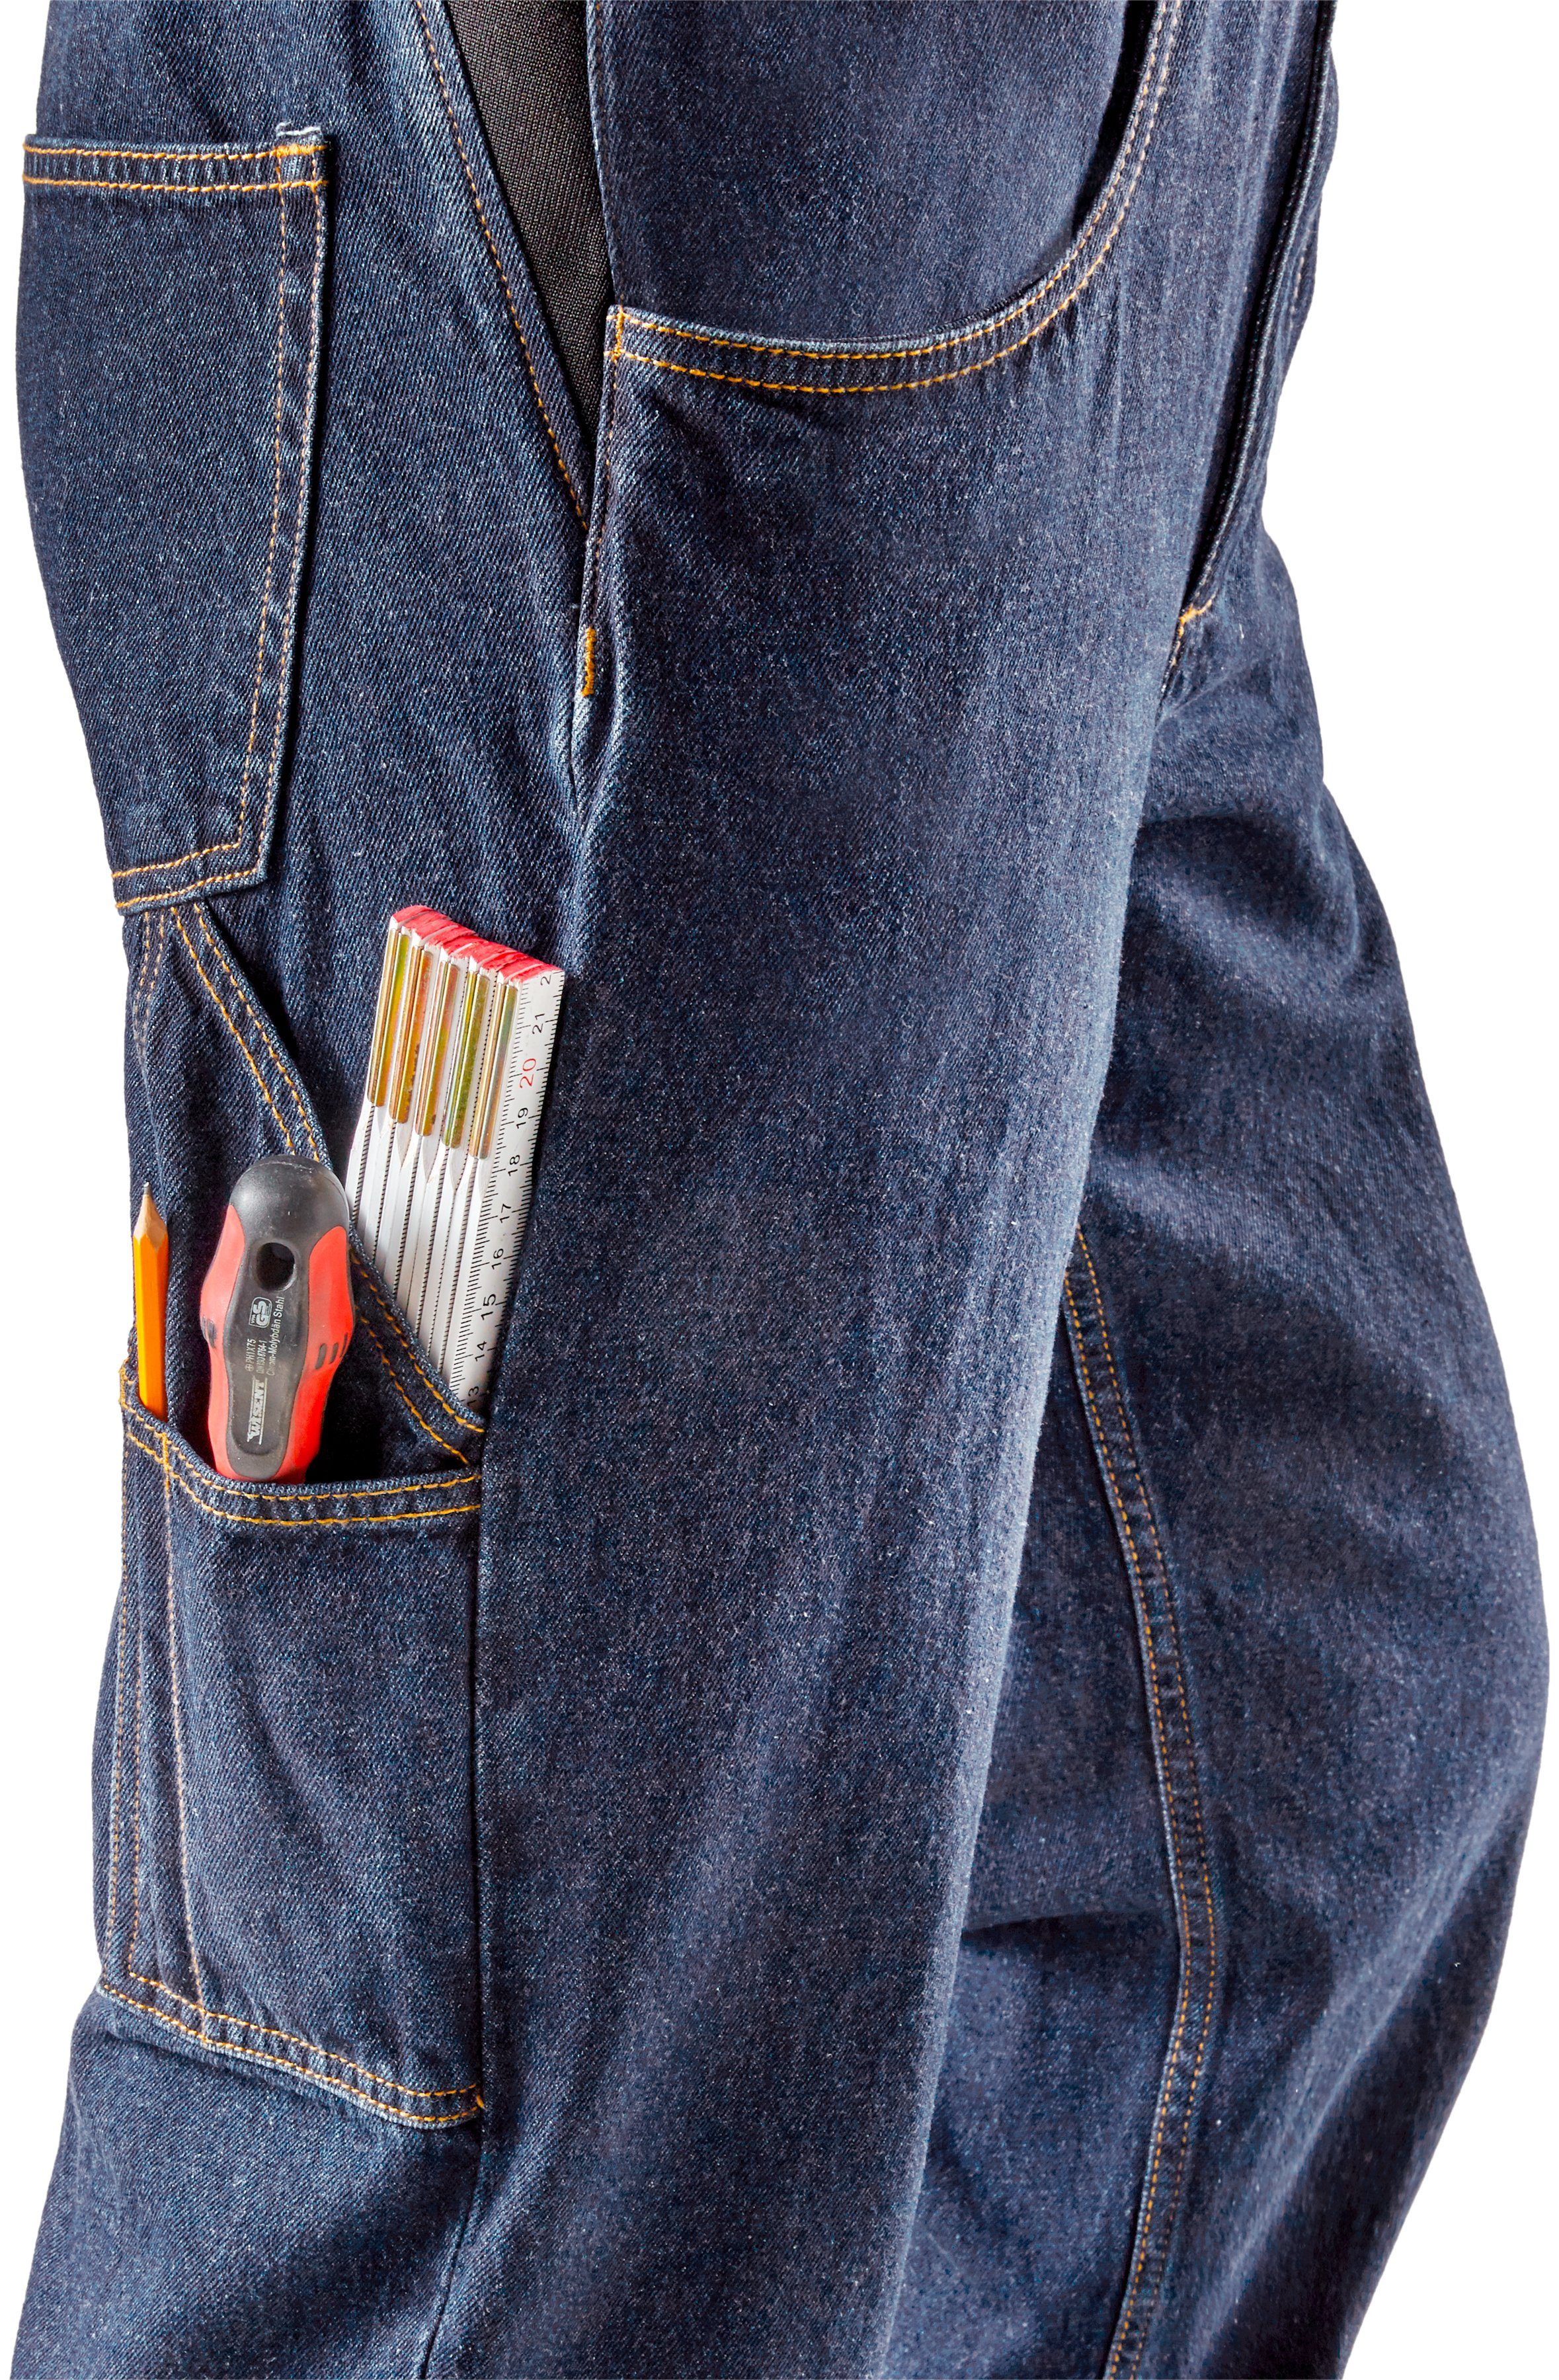 Northern Country Latzhose Worker Jeans Bund, Baumwolle, robuster (aus mit und fit) dehnbarem Jeansstoff, comfort 11 100% langlebig Taschen, strapazierfähig